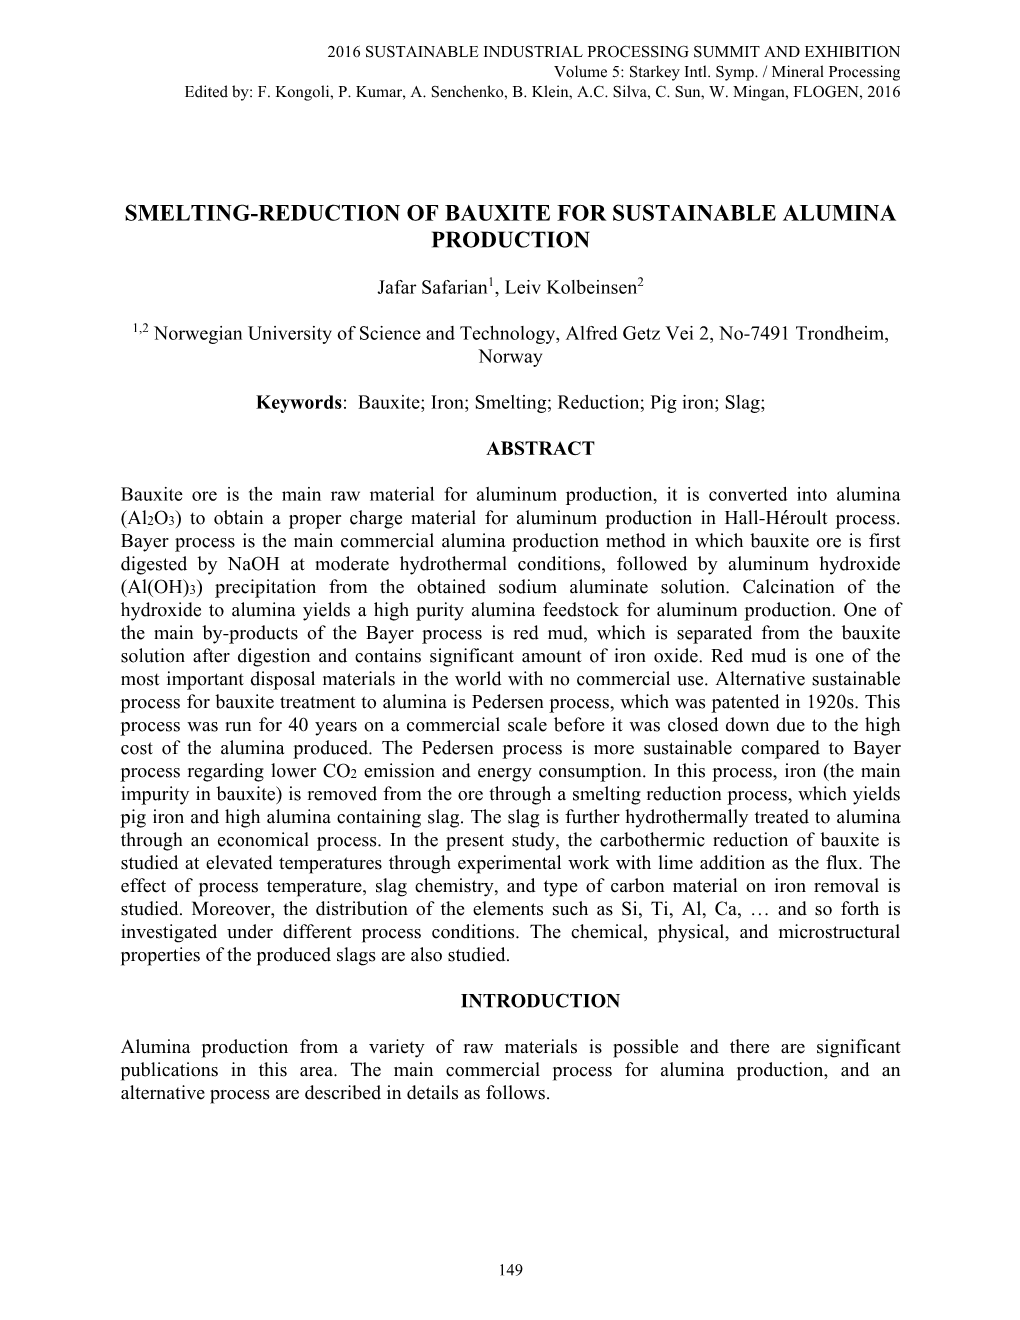 Smelting-Reduction of Bauxite for Sustainable Alumina Production